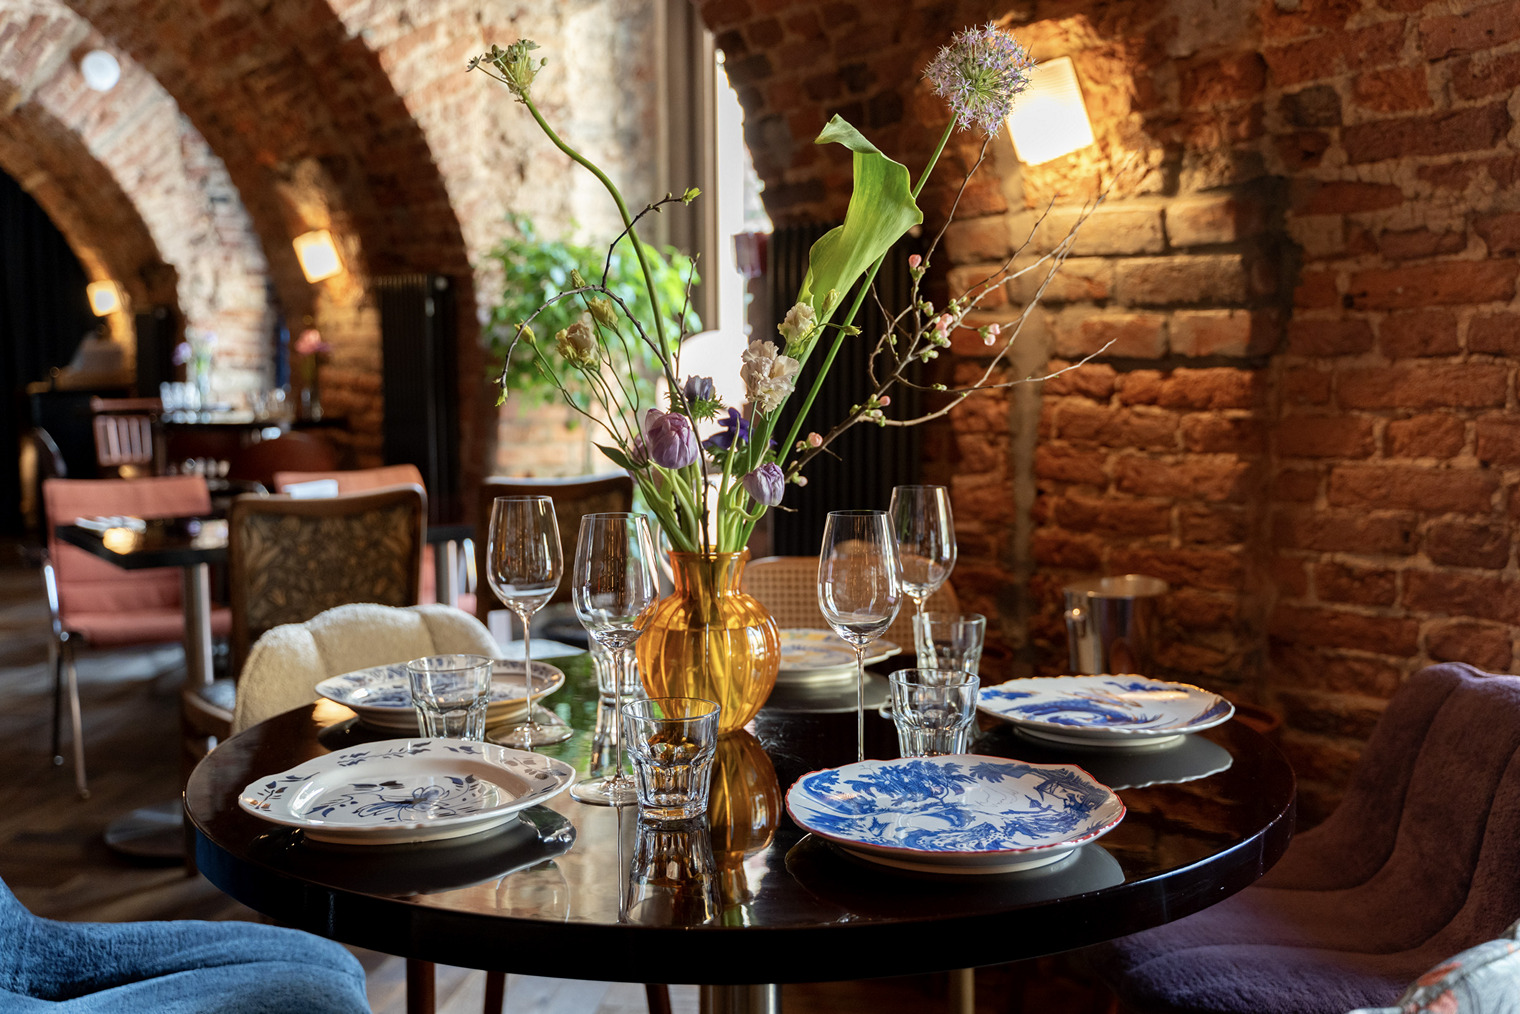 Интерьер этого ресторана italy&co своей эклектикой напоминает их другие проекты: немного Salone pasta&bar, немного Juan Cantina Espanola